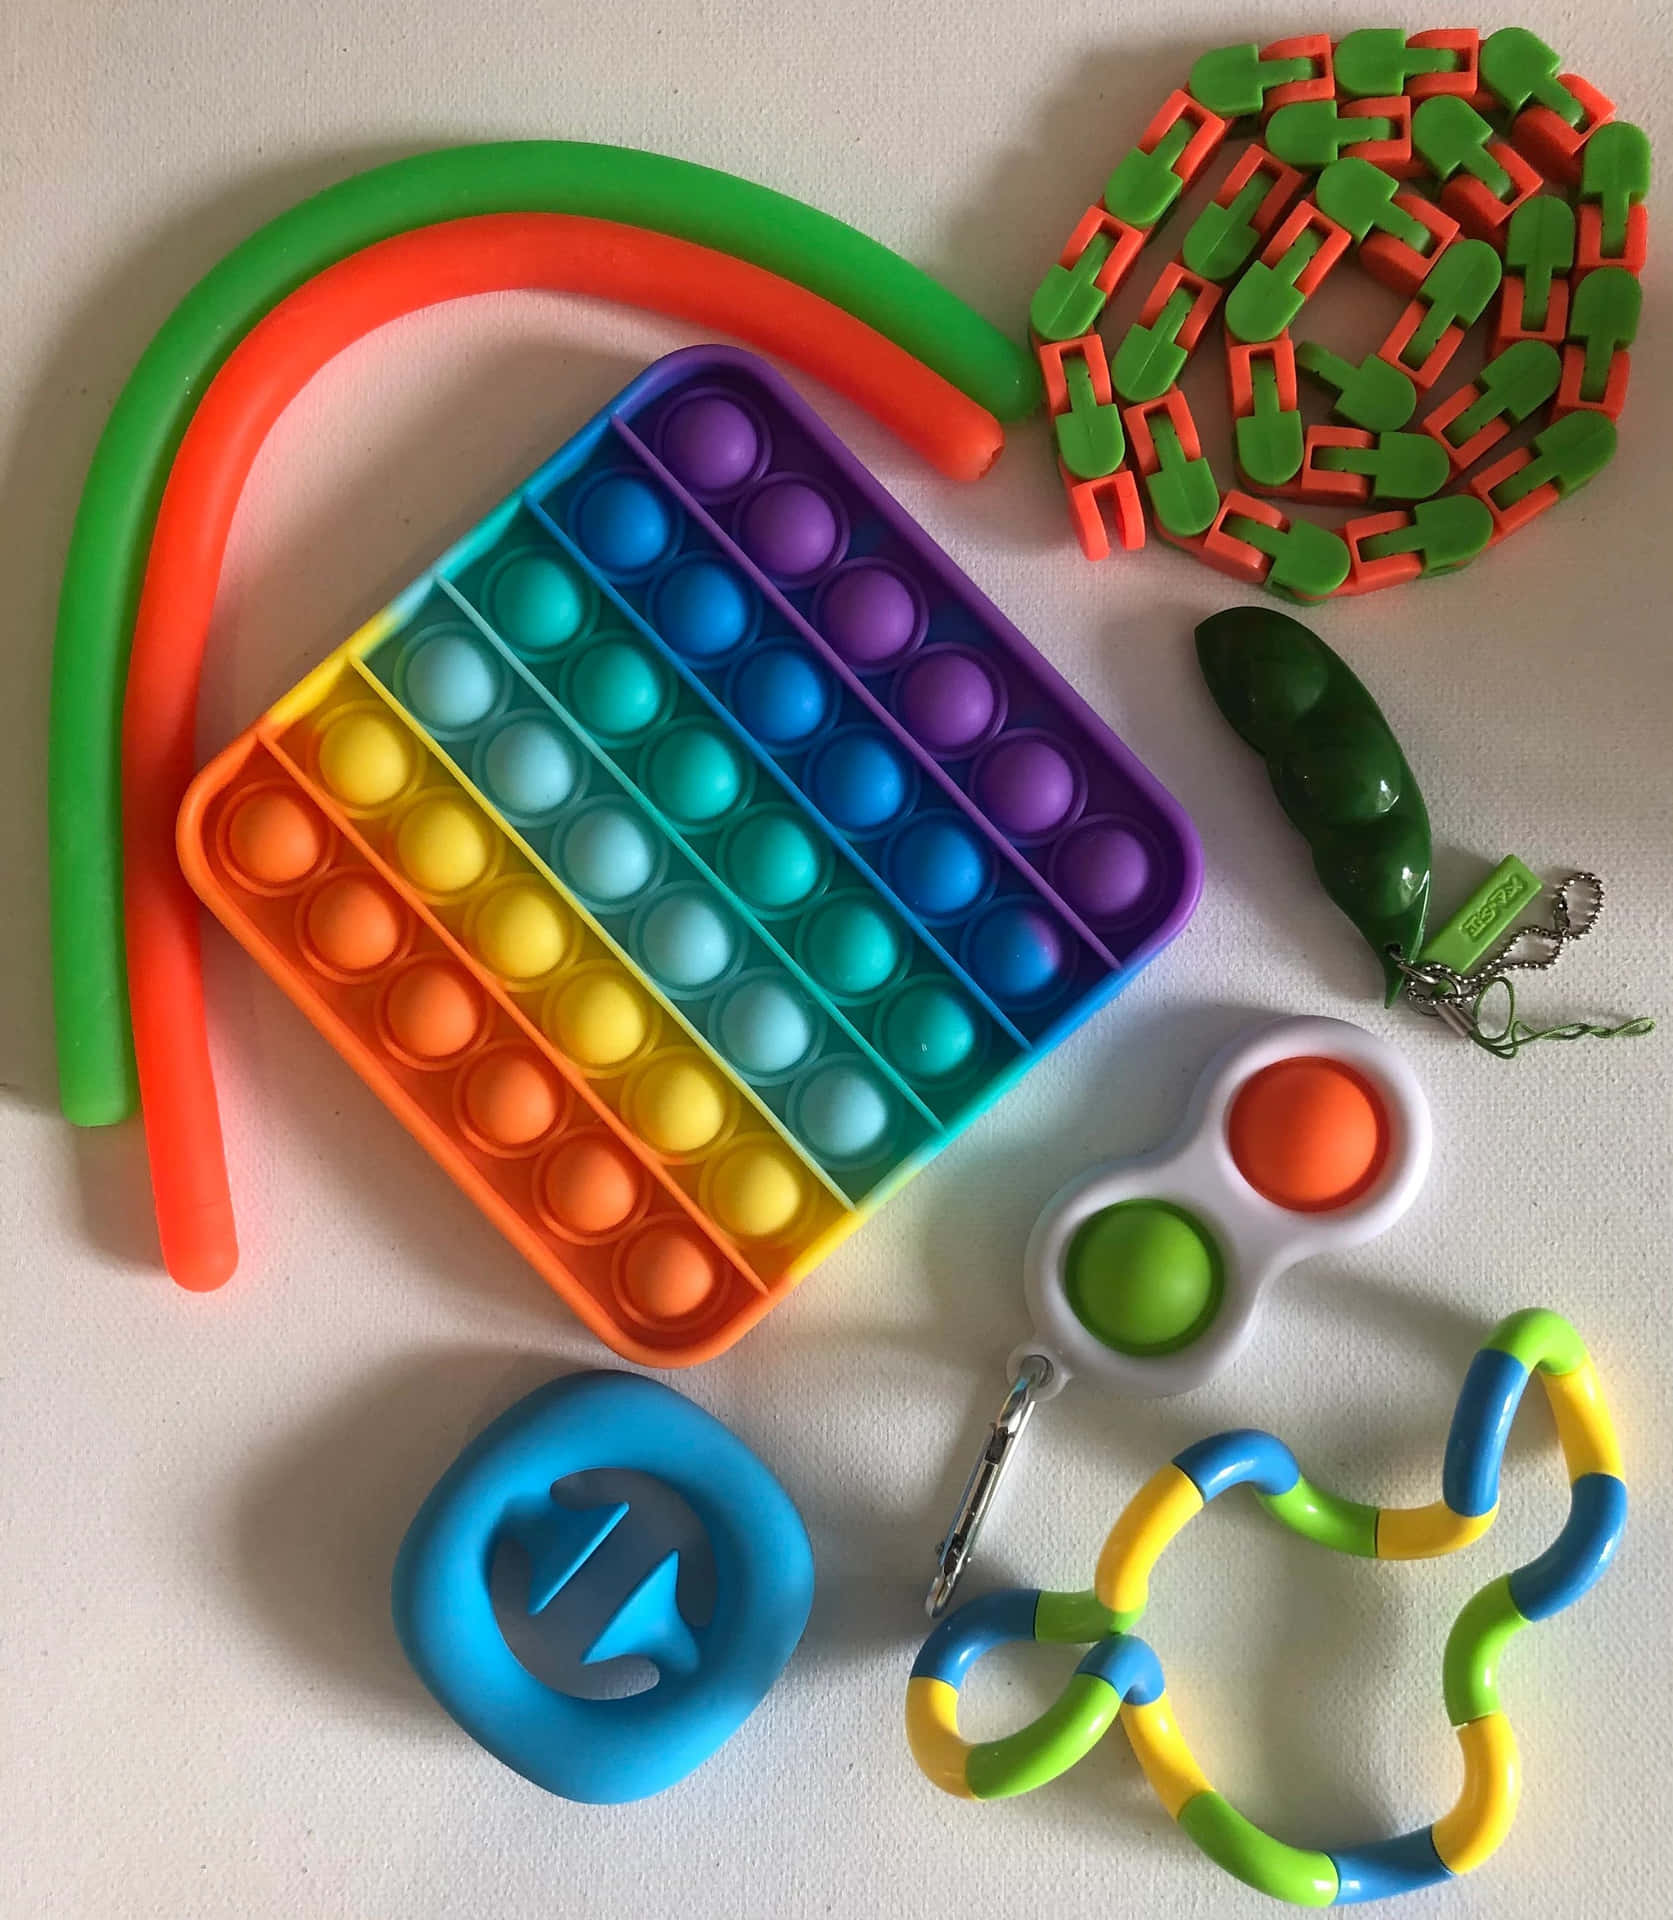 Umconjunto Colorido De Brinquedos E Um Brinquedo De Plástico